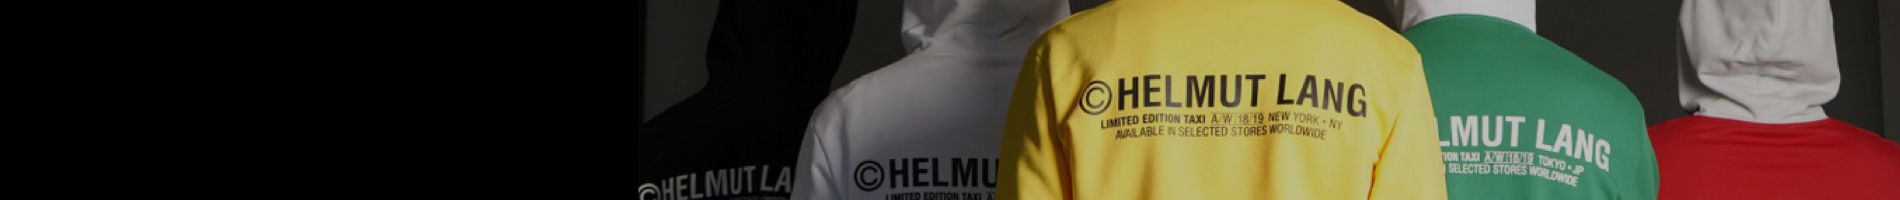 Helmut Lang Men's Outerwear Banner